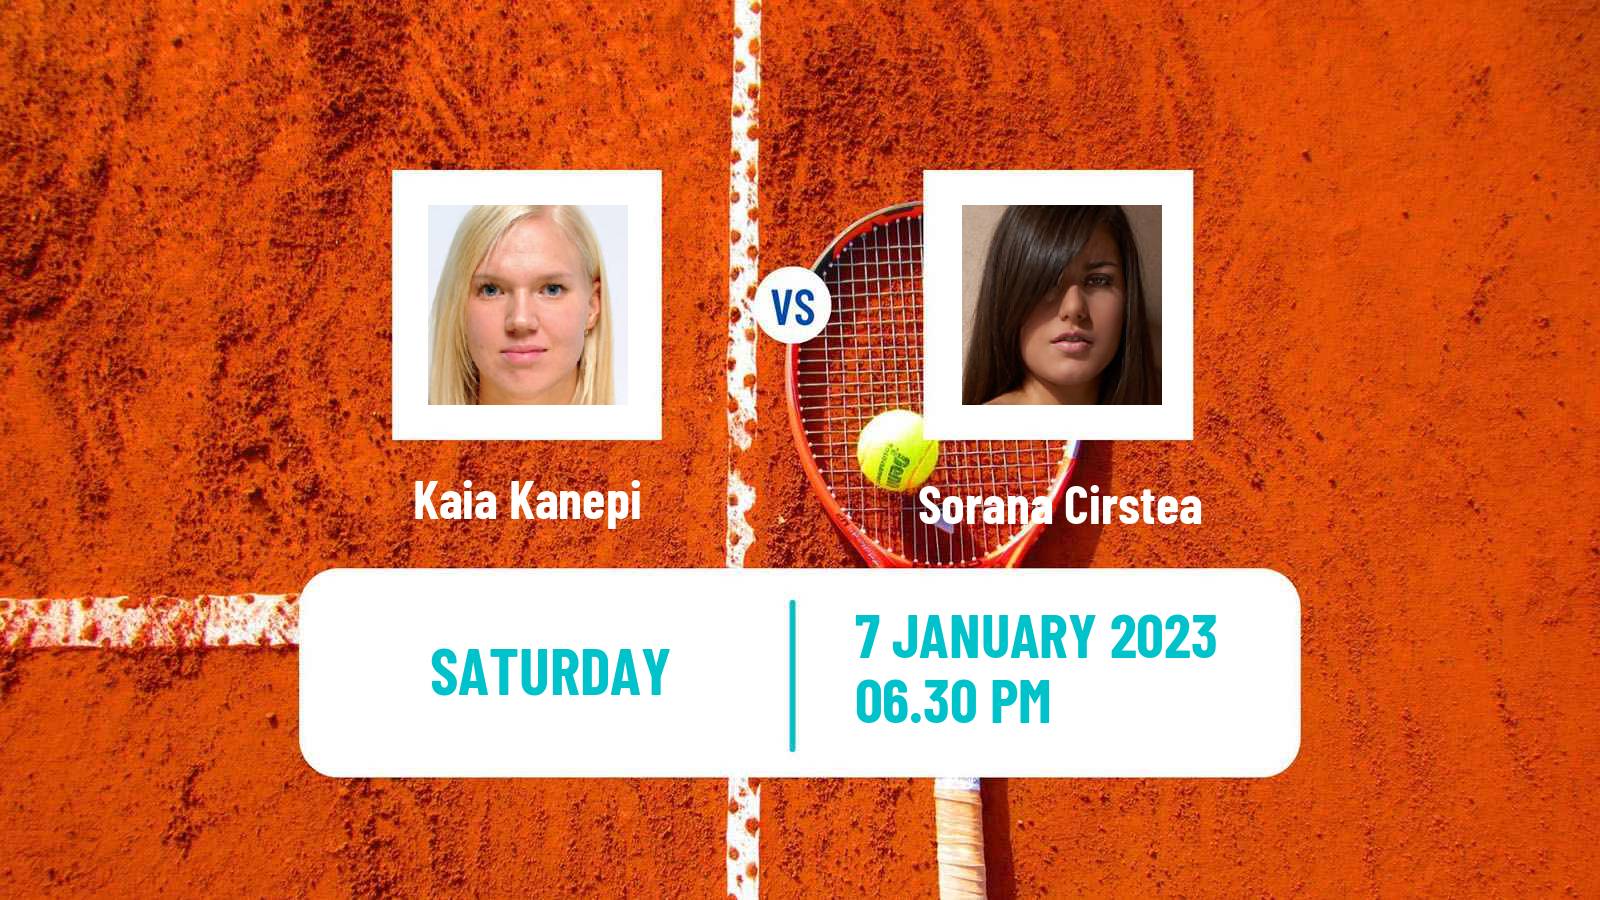 Tennis WTA Adelaide 2 Kaia Kanepi - Sorana Cirstea